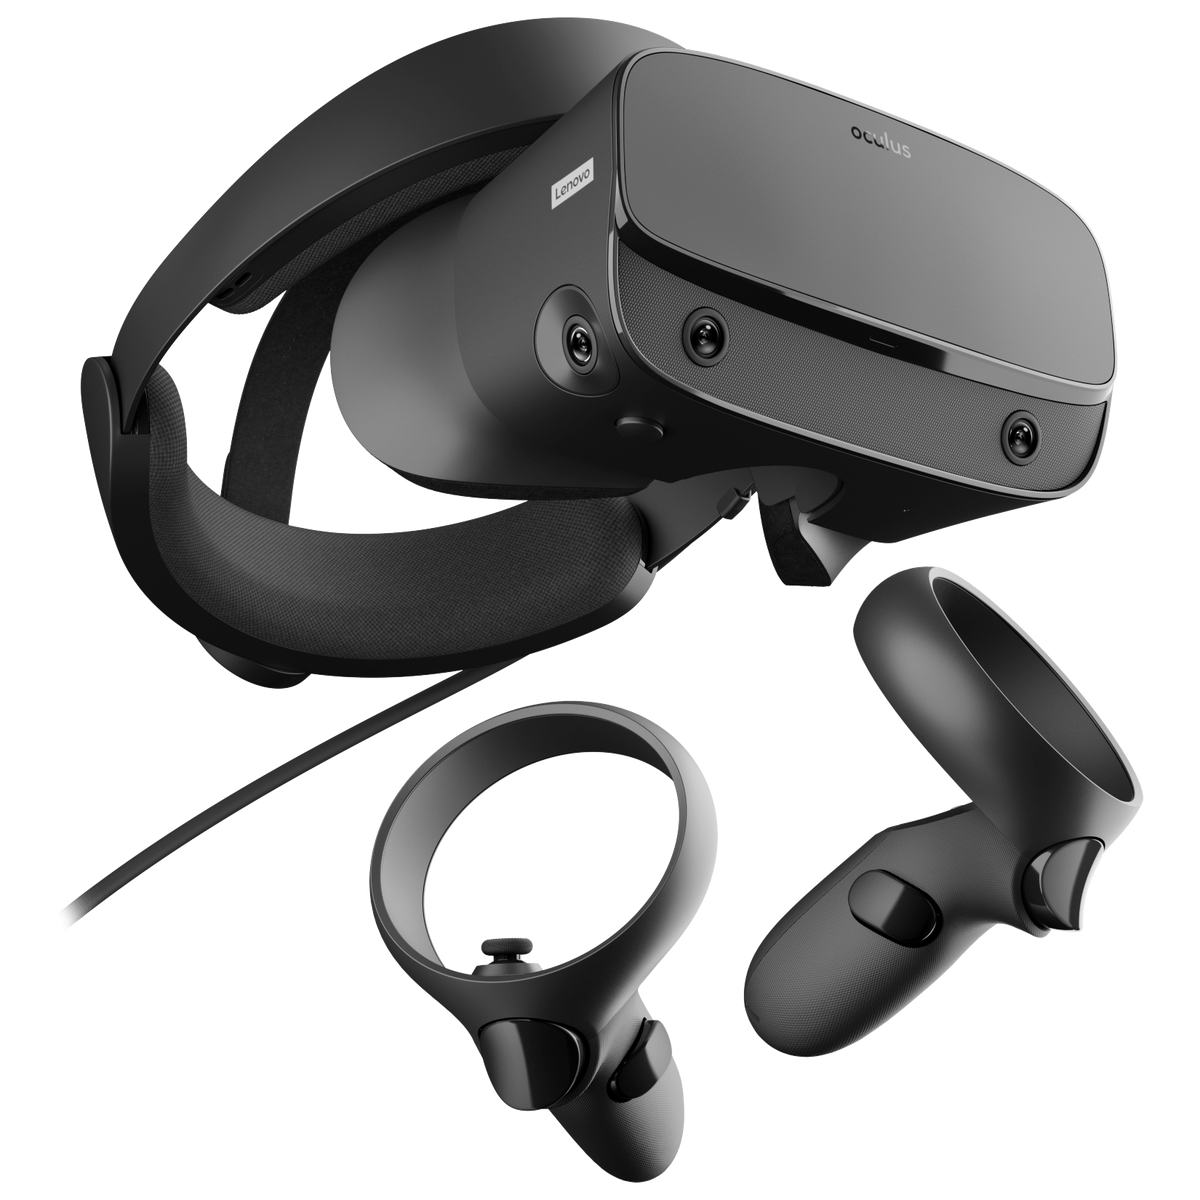 Очки виртуальной реальности Oculus Rift S б/у